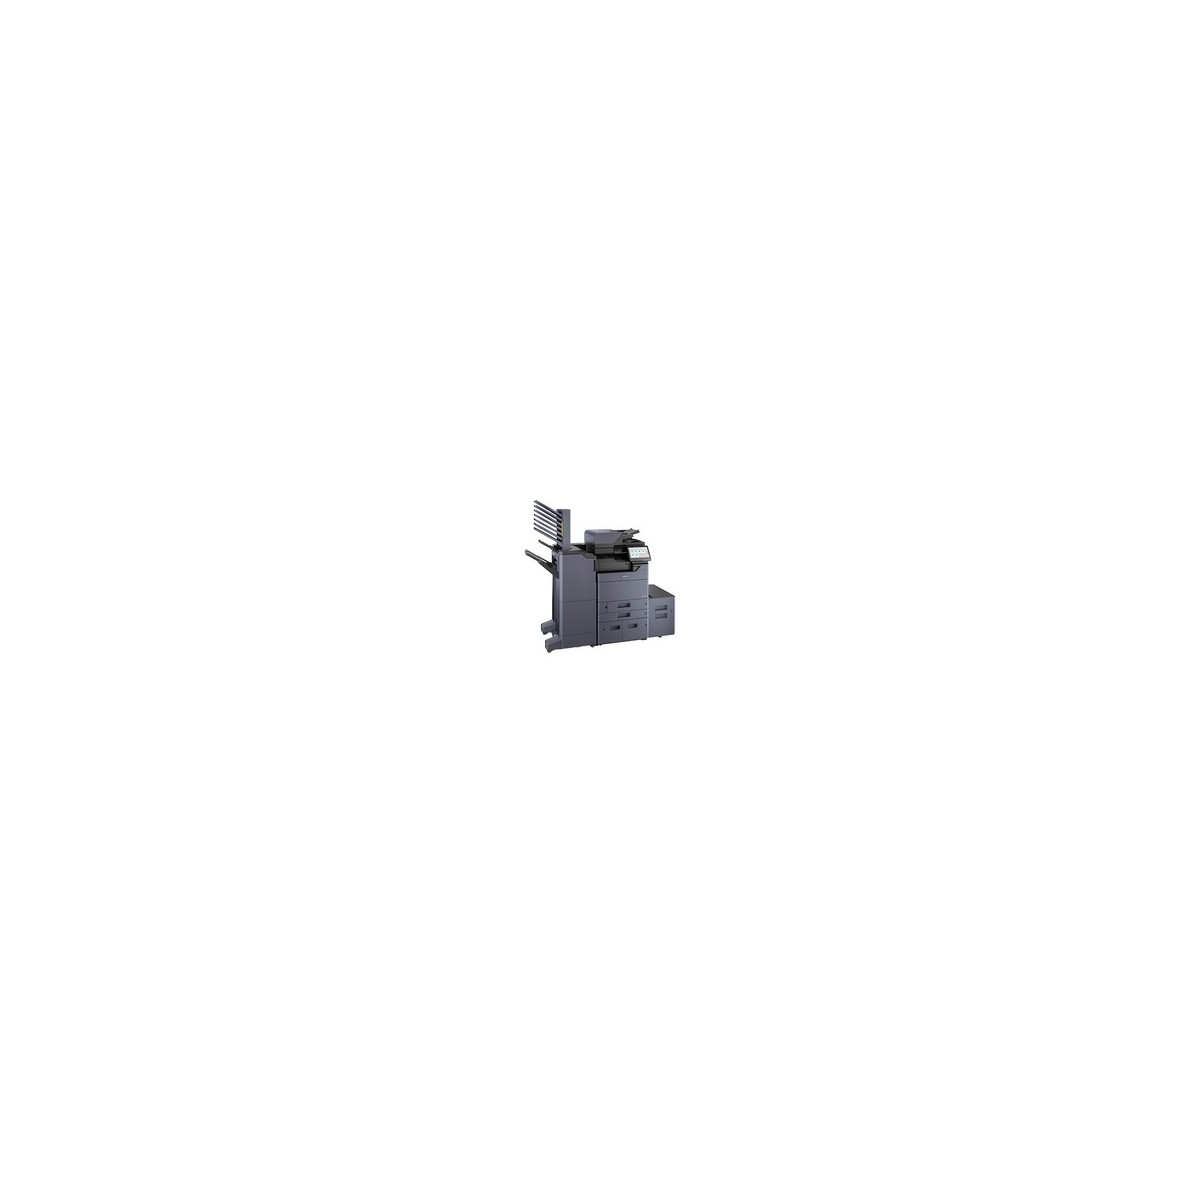 Kyocera TASKalfa 5004i - Laser - Mono printing - 4800 x 1200 DPI - Mono copying - A3 - Black